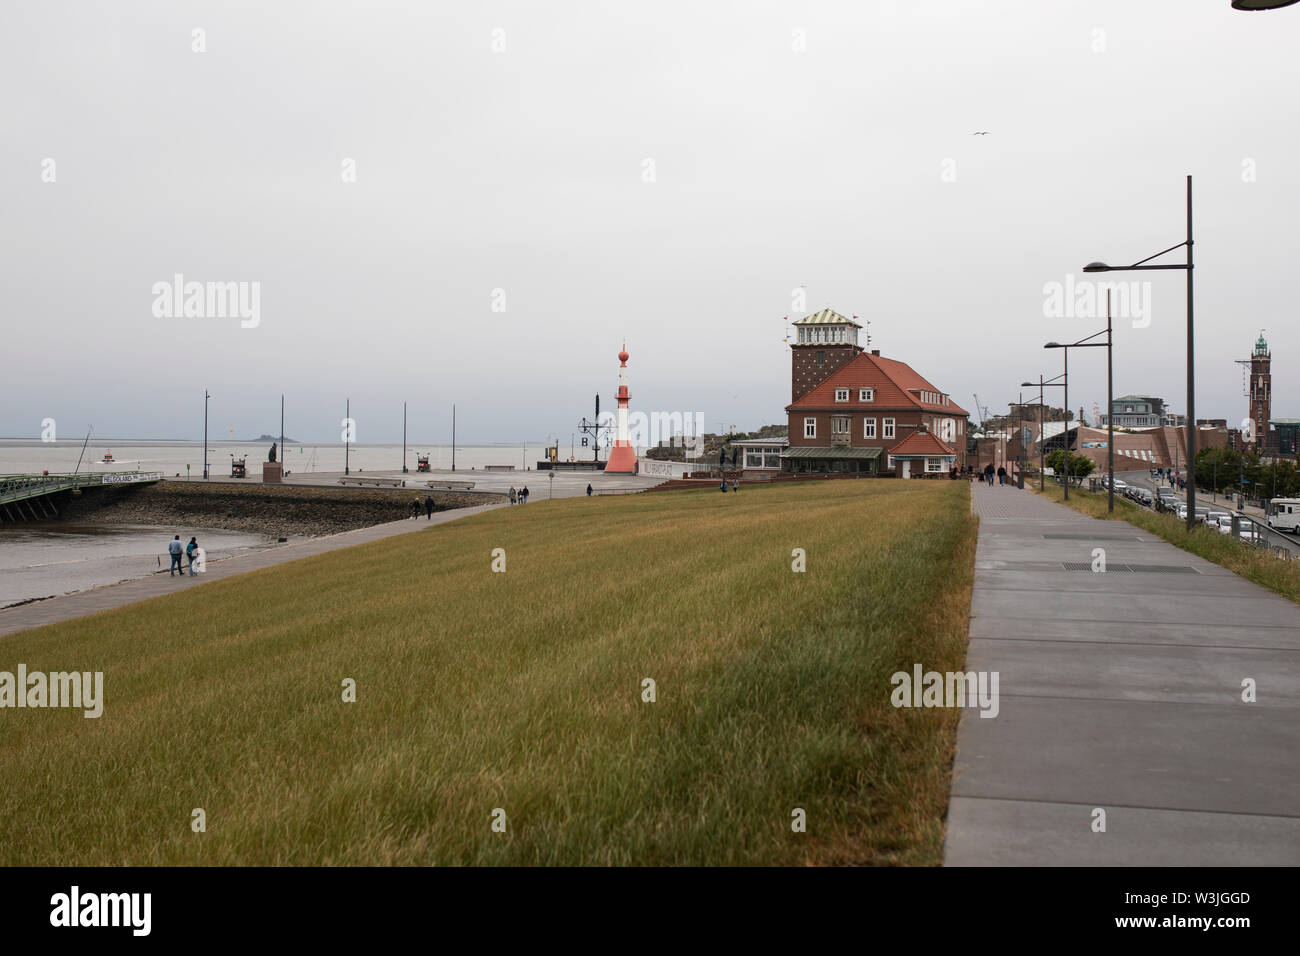 Bei einem Spaziergang entlang der Hafenpromenade in Richtung Leuchtturm am Willy Brandt Platz an einem bewölkten Tag in Bremerhaven, Deutschland, an der Nordsee. Stockfoto